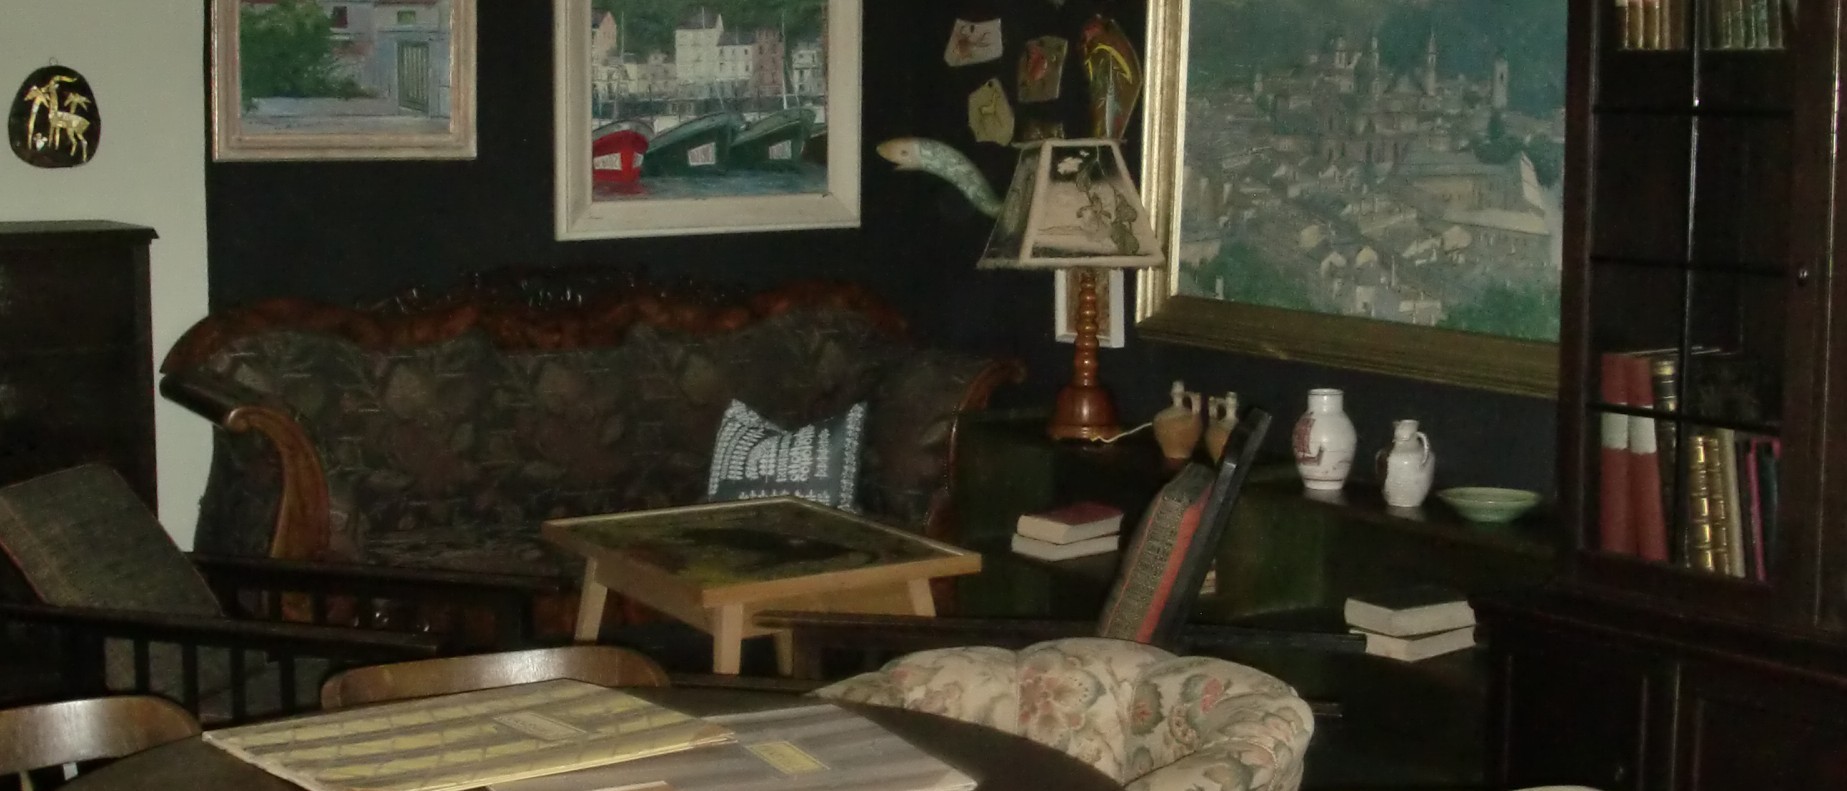 Das Foto zeigt einen Ausschnitt des Wohnzimmers von Karl Schmidt. Man sieht Bilder und andere Kunstobjekte an den Wänden sowie ein Sofa, Regale, Stühle und einen Mosaiktisch.